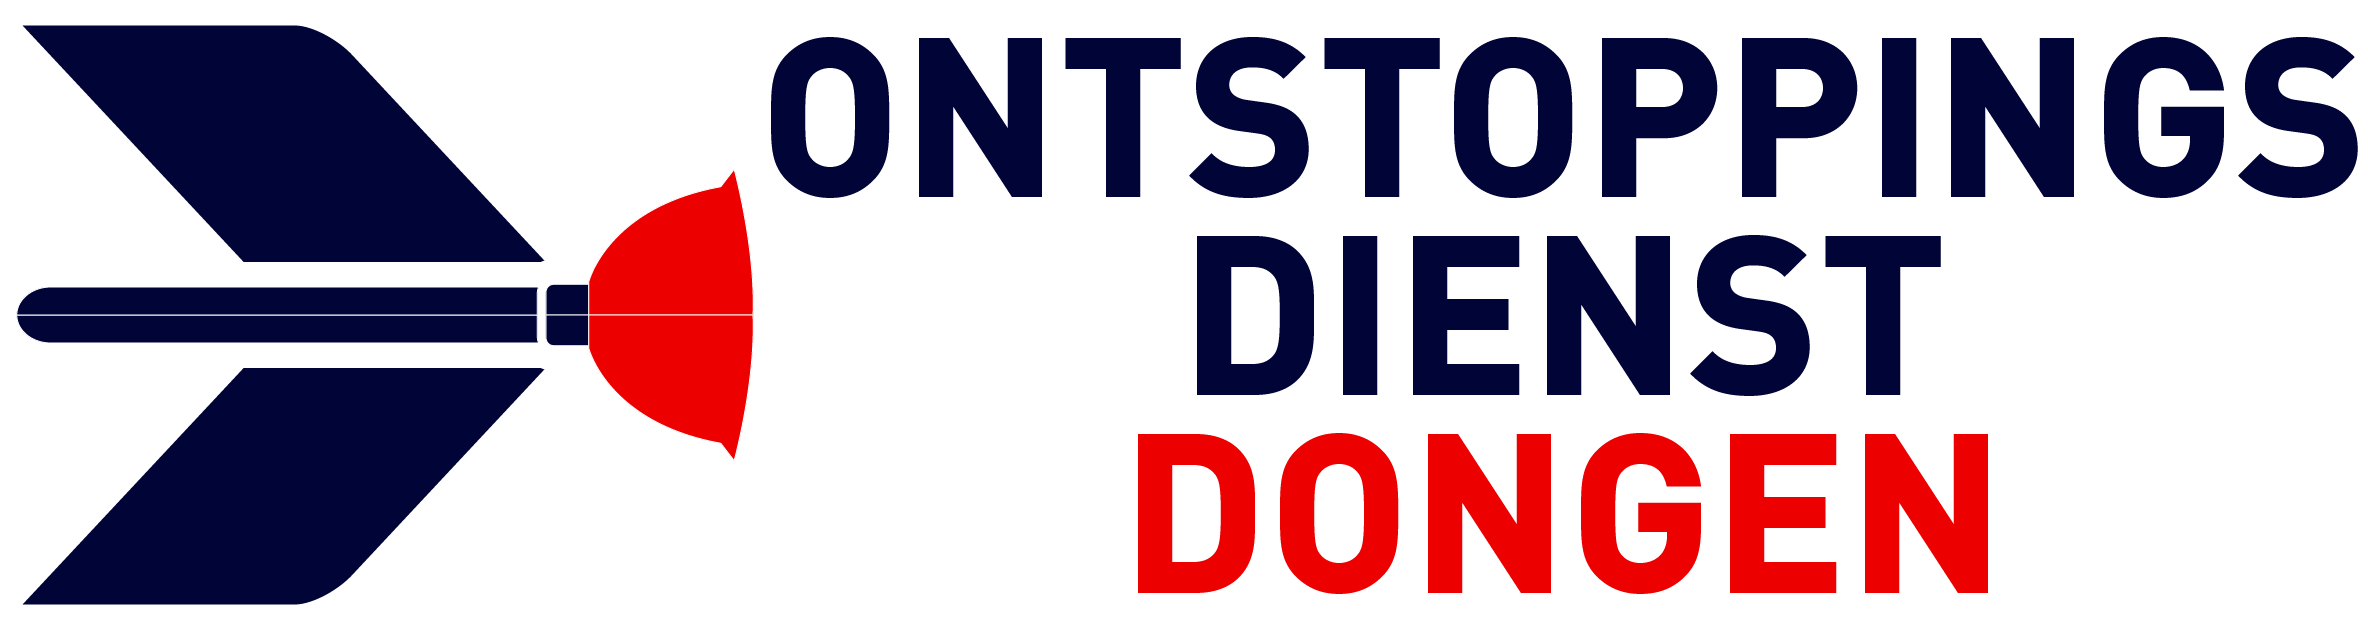 Ontstoppingsdienst Dongen logo